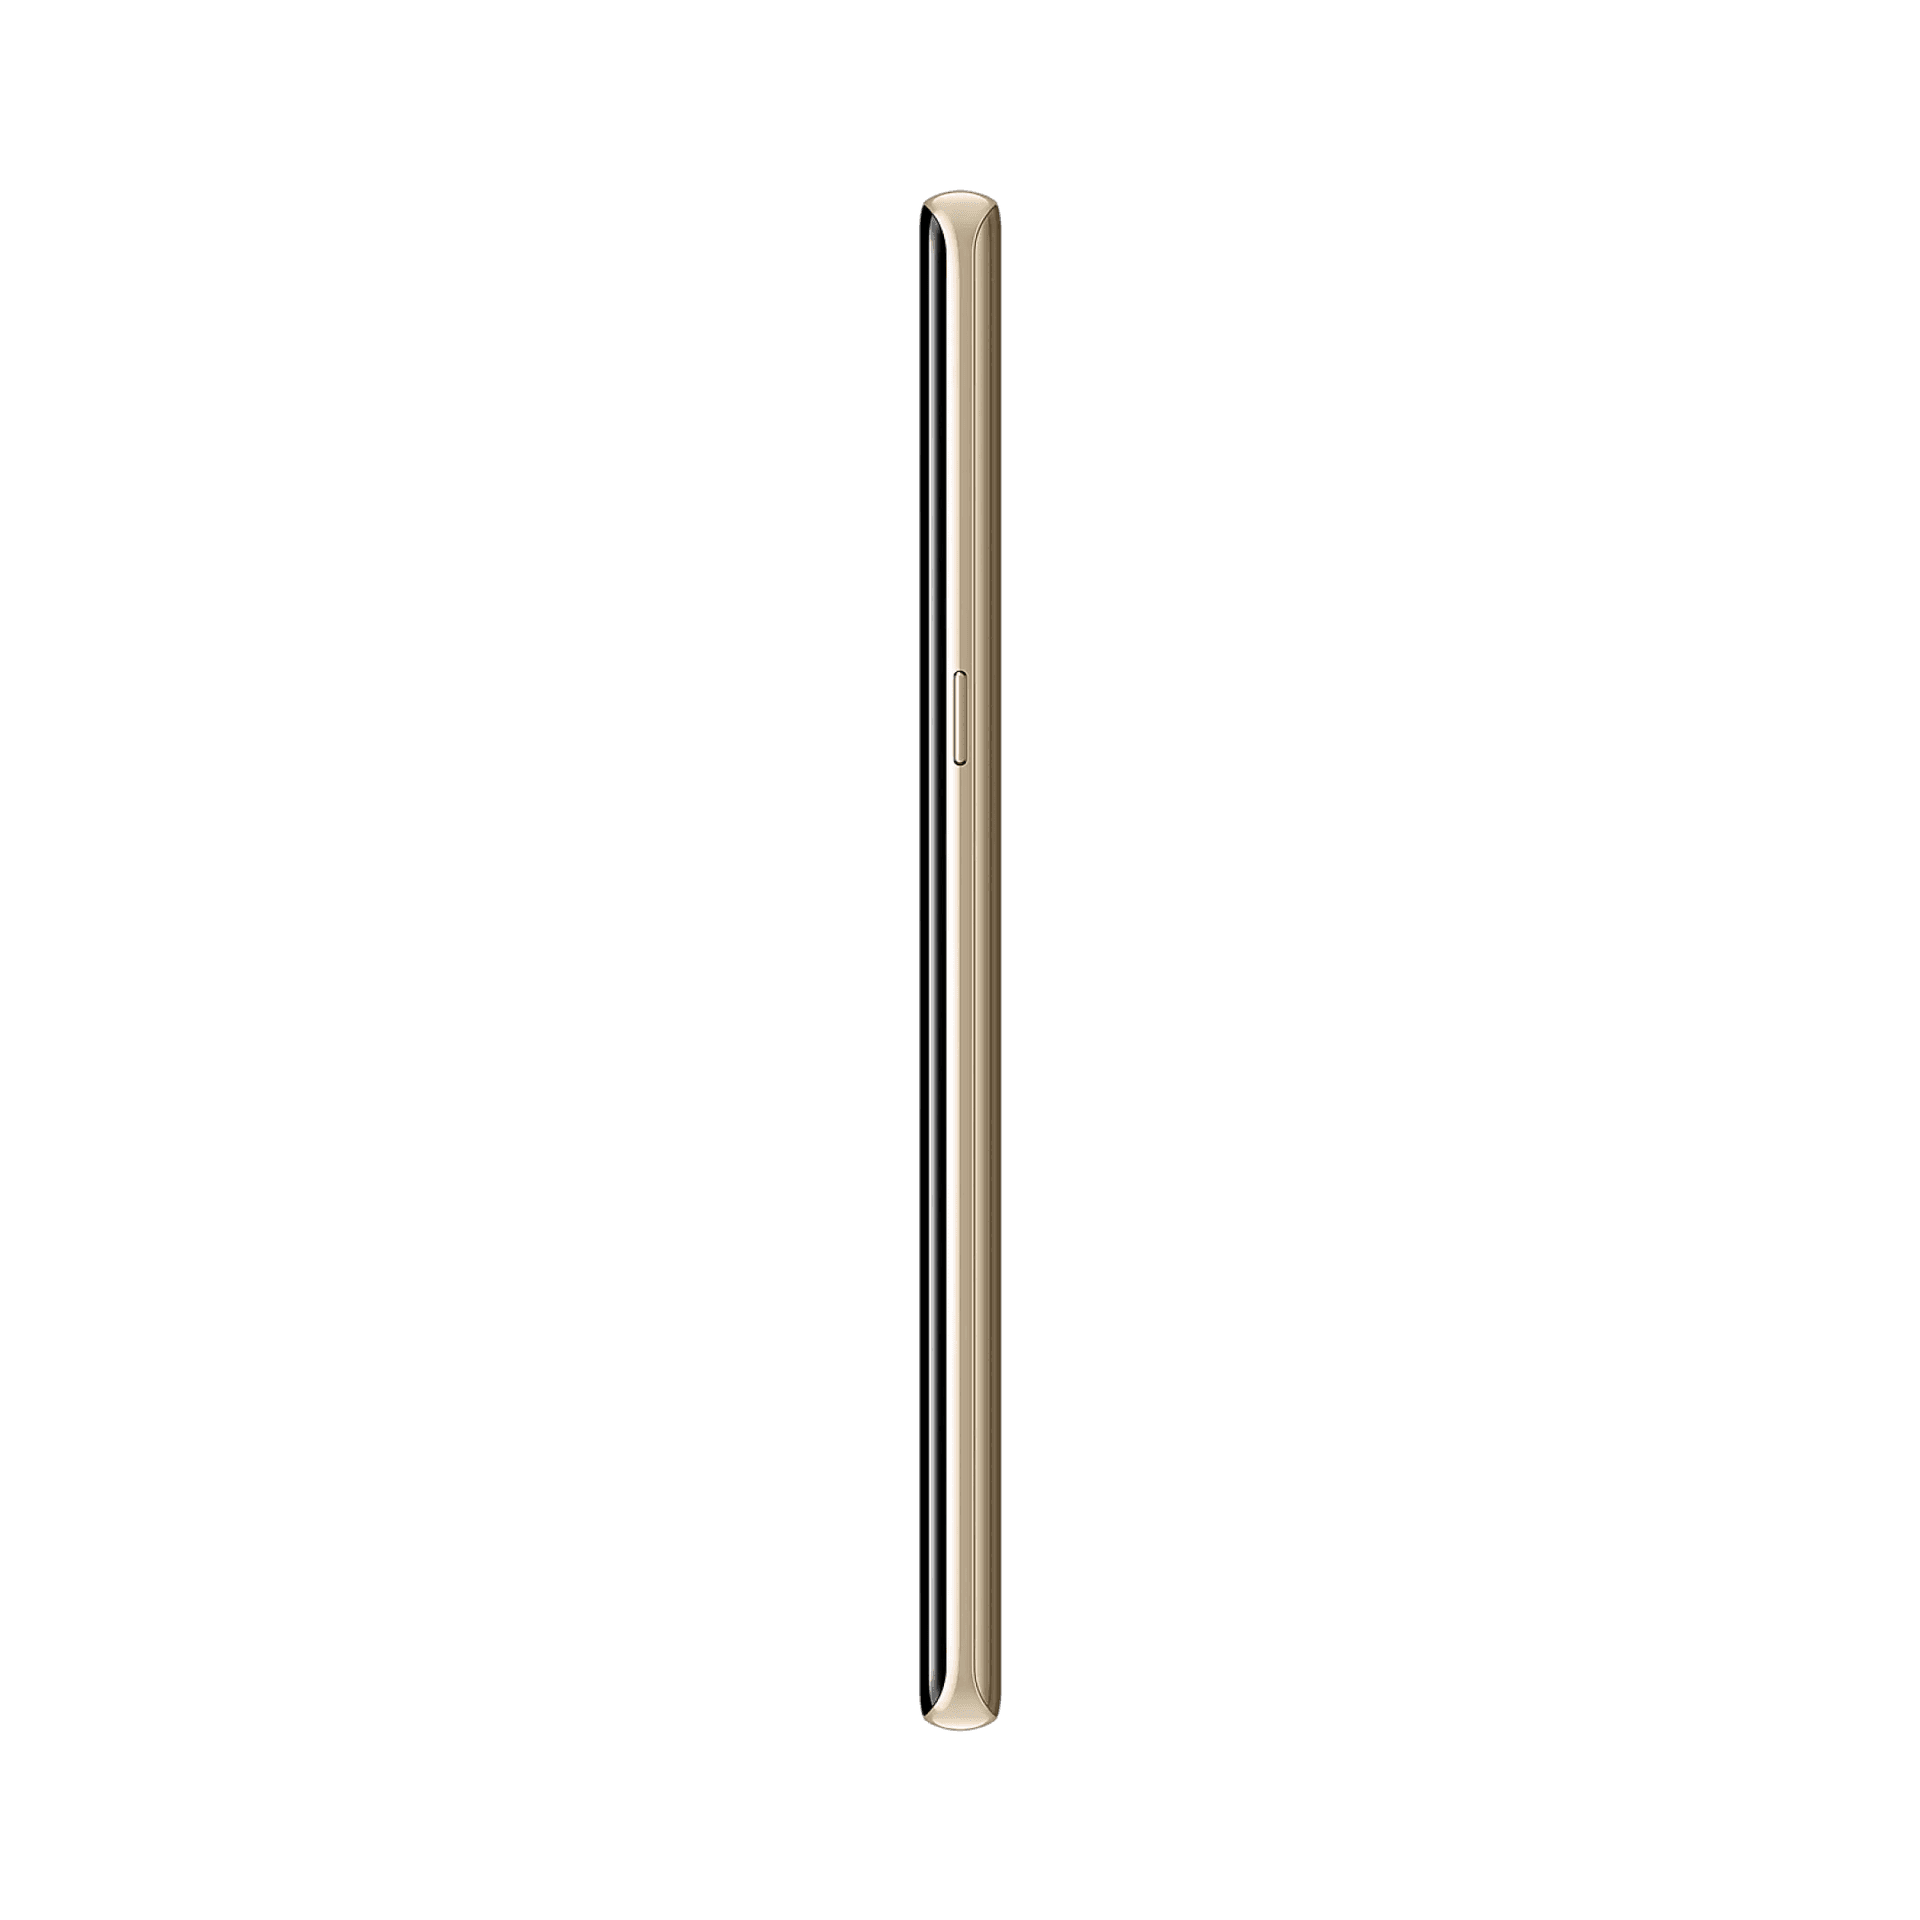 Samsung Galaxy Note 8 - 128 GB - akçaağaç Altını